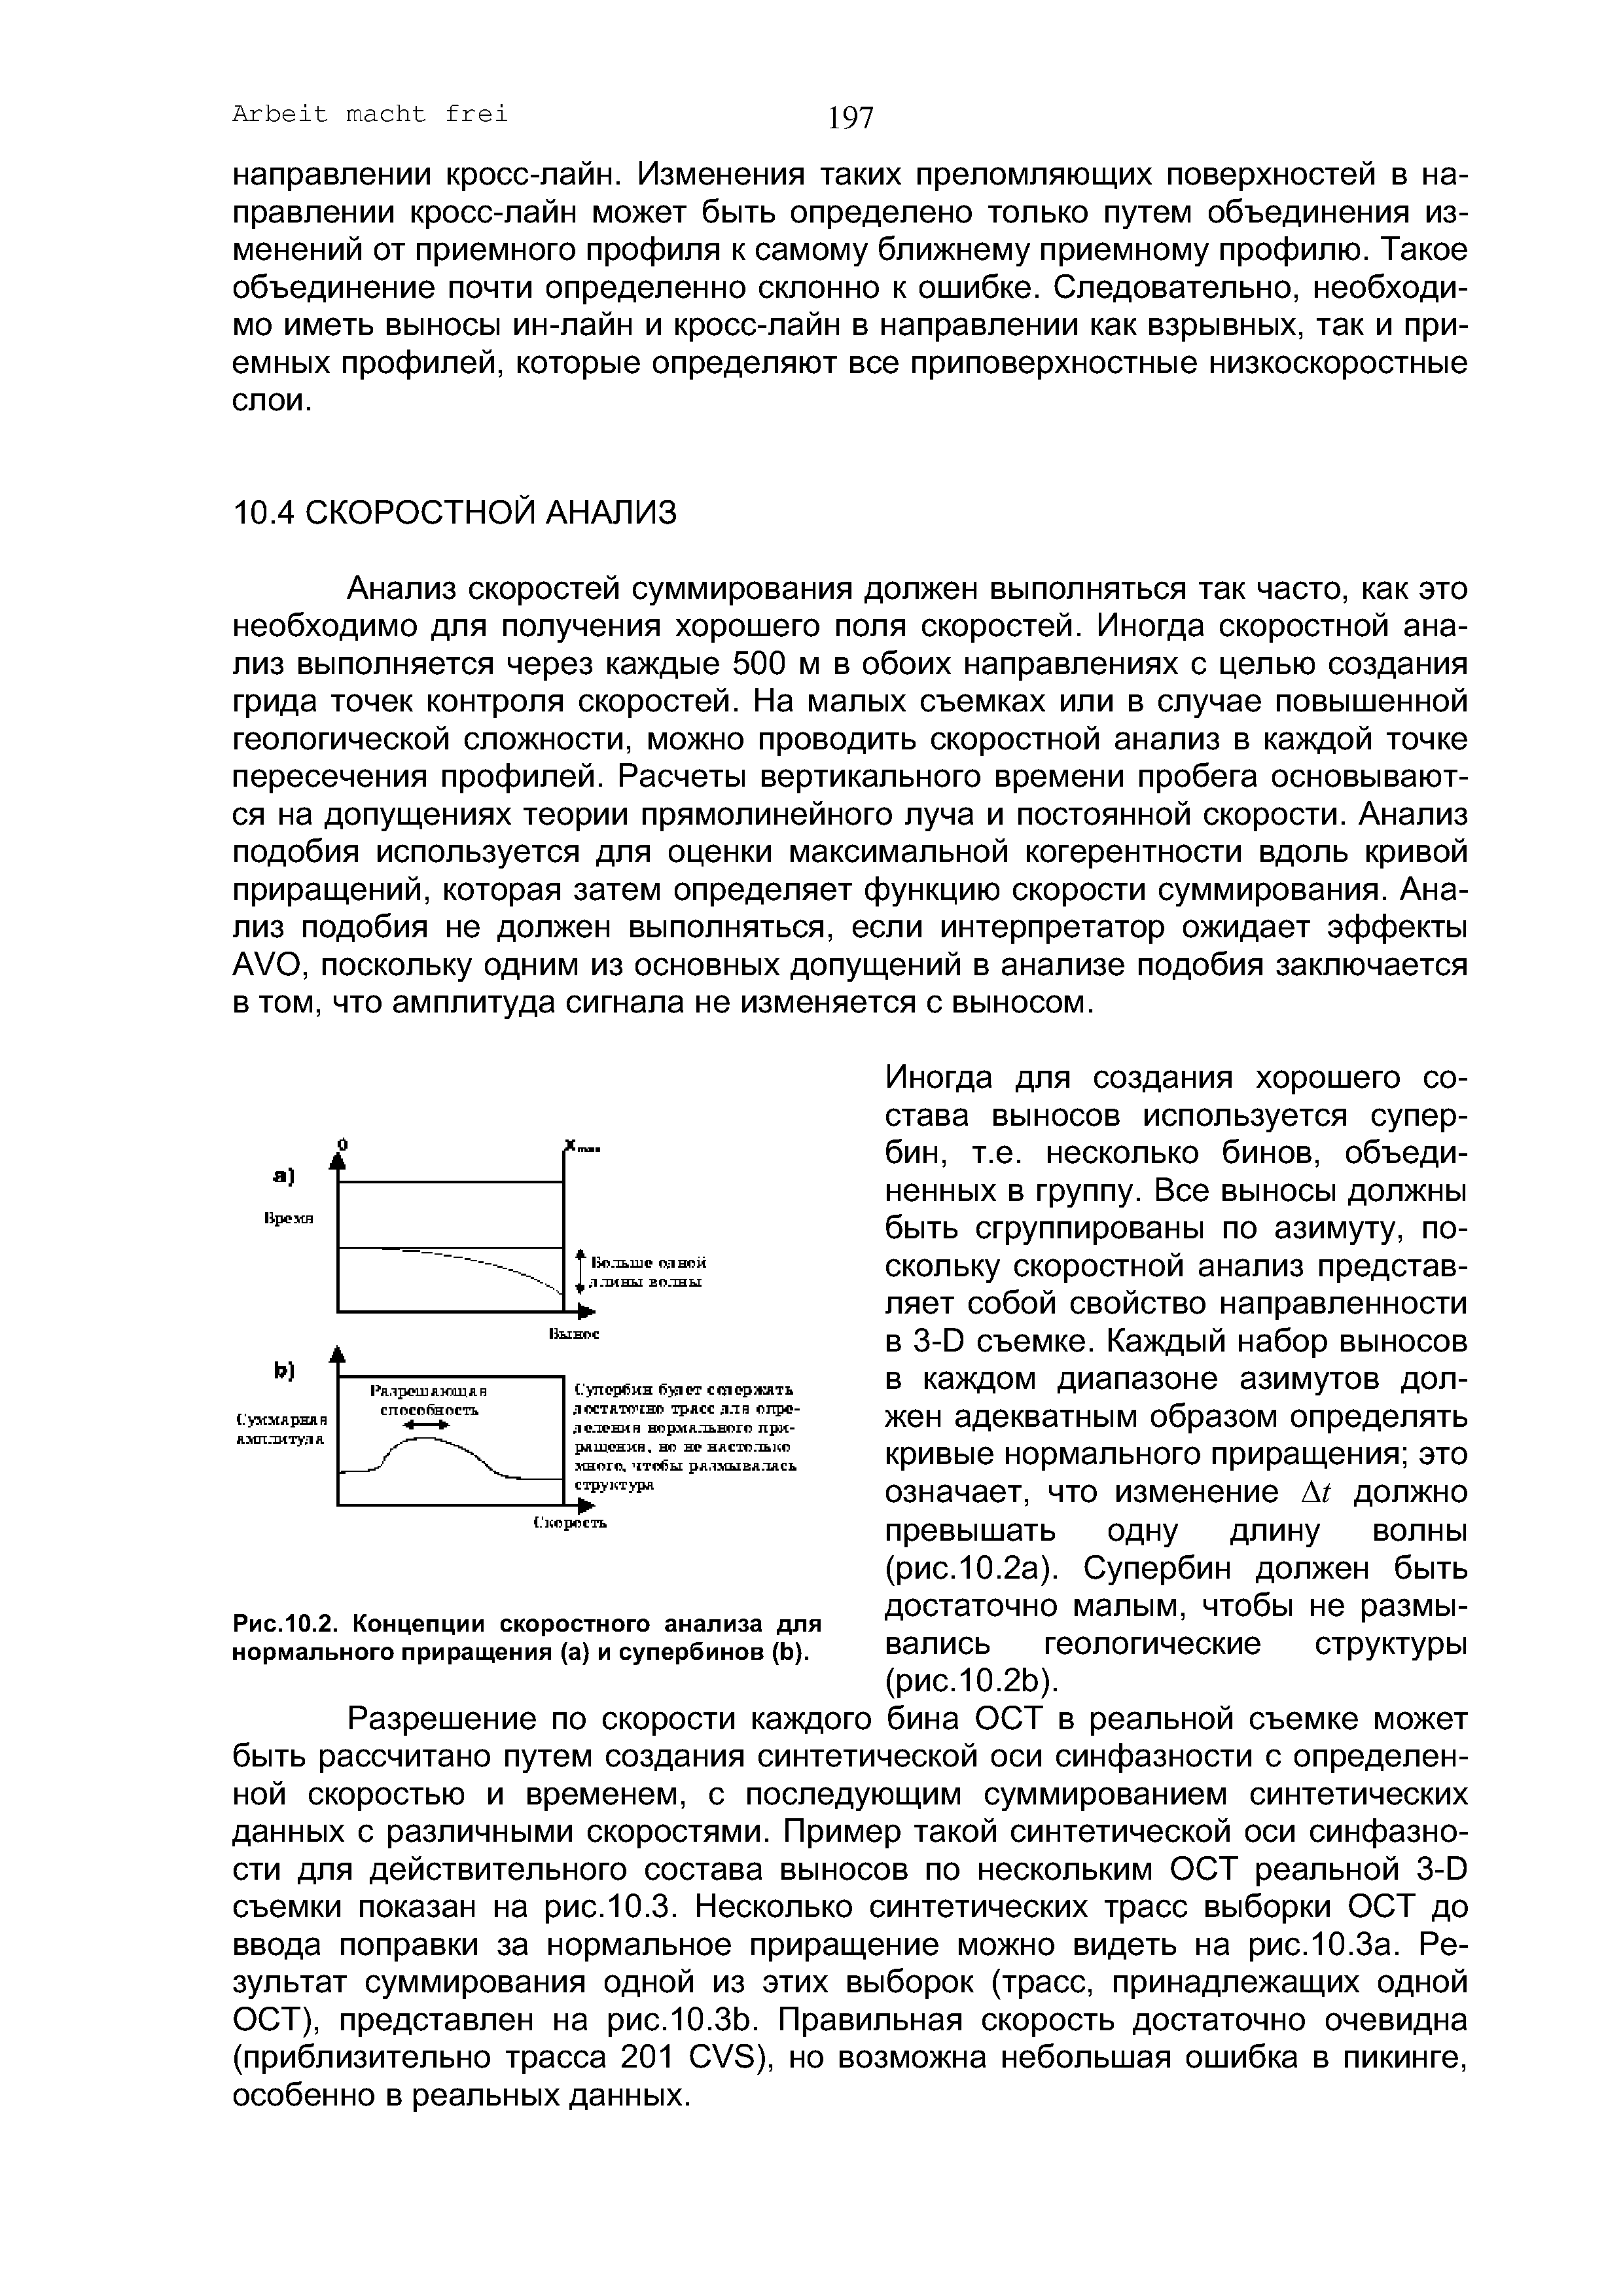 Рис.10.2. Концепции скоростного анализа для <a href="/info/194134">нормального приращения</a> (а) и супербинов (Ь).
